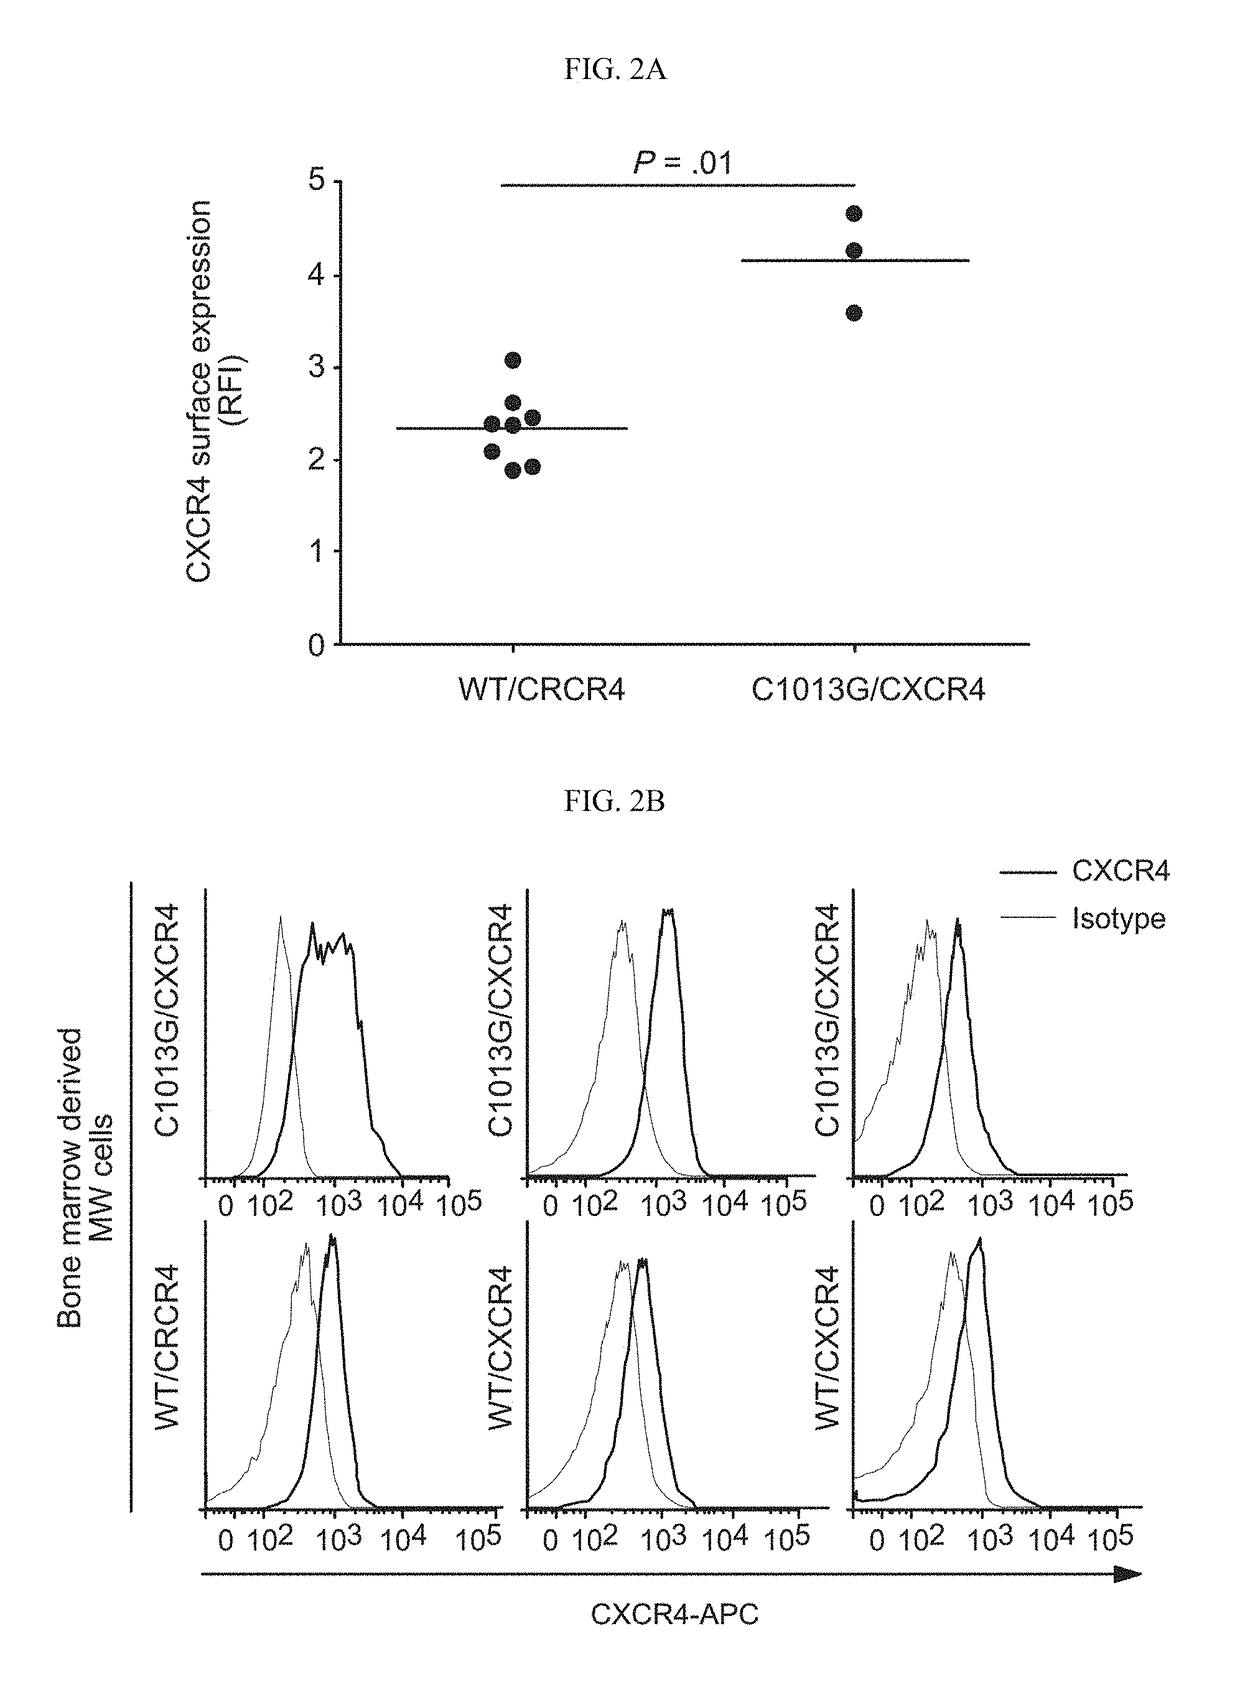 Treatment of C1013G/CXCR4-associated waldenstroöm's macroglobulinemia with an anti-CXCR4 antibody